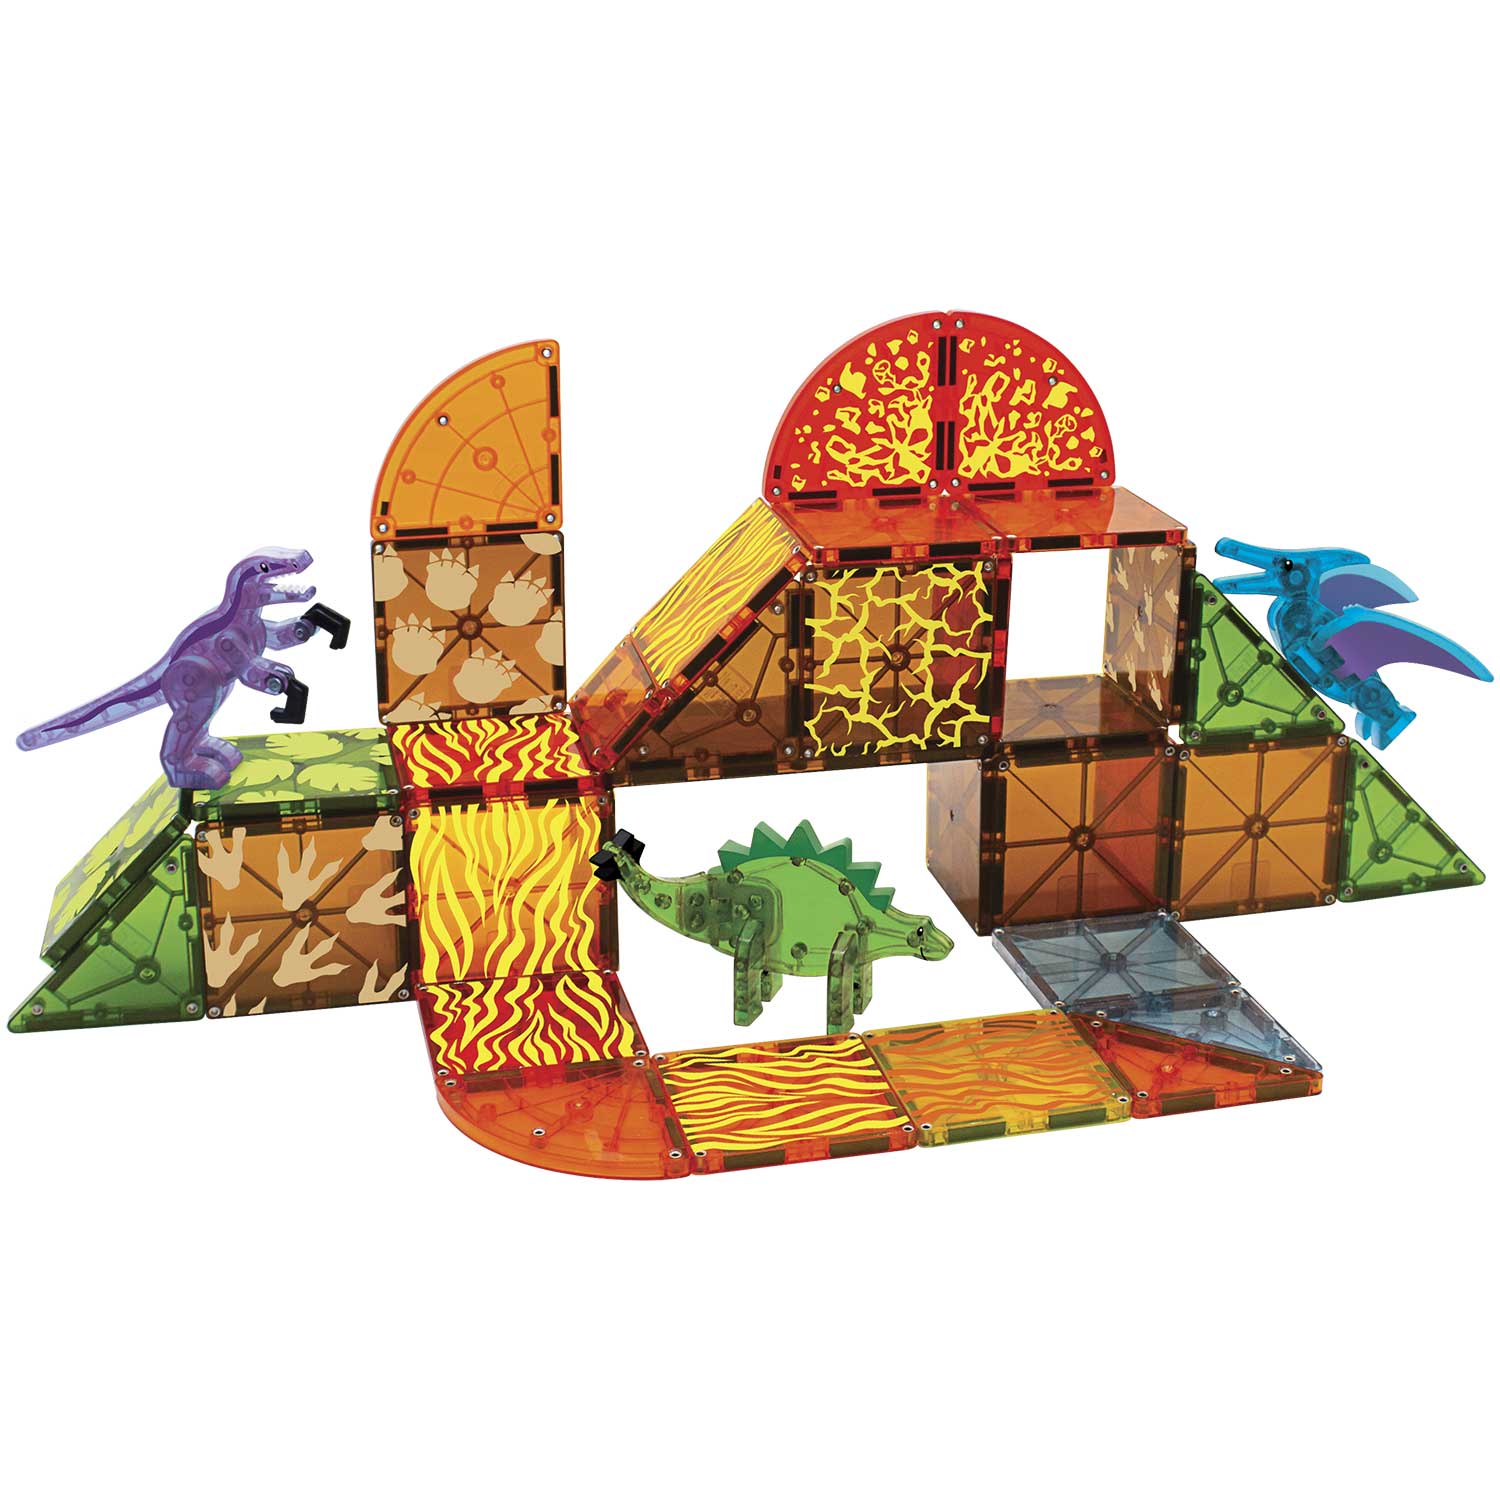 Magna-Tiles® Dino World